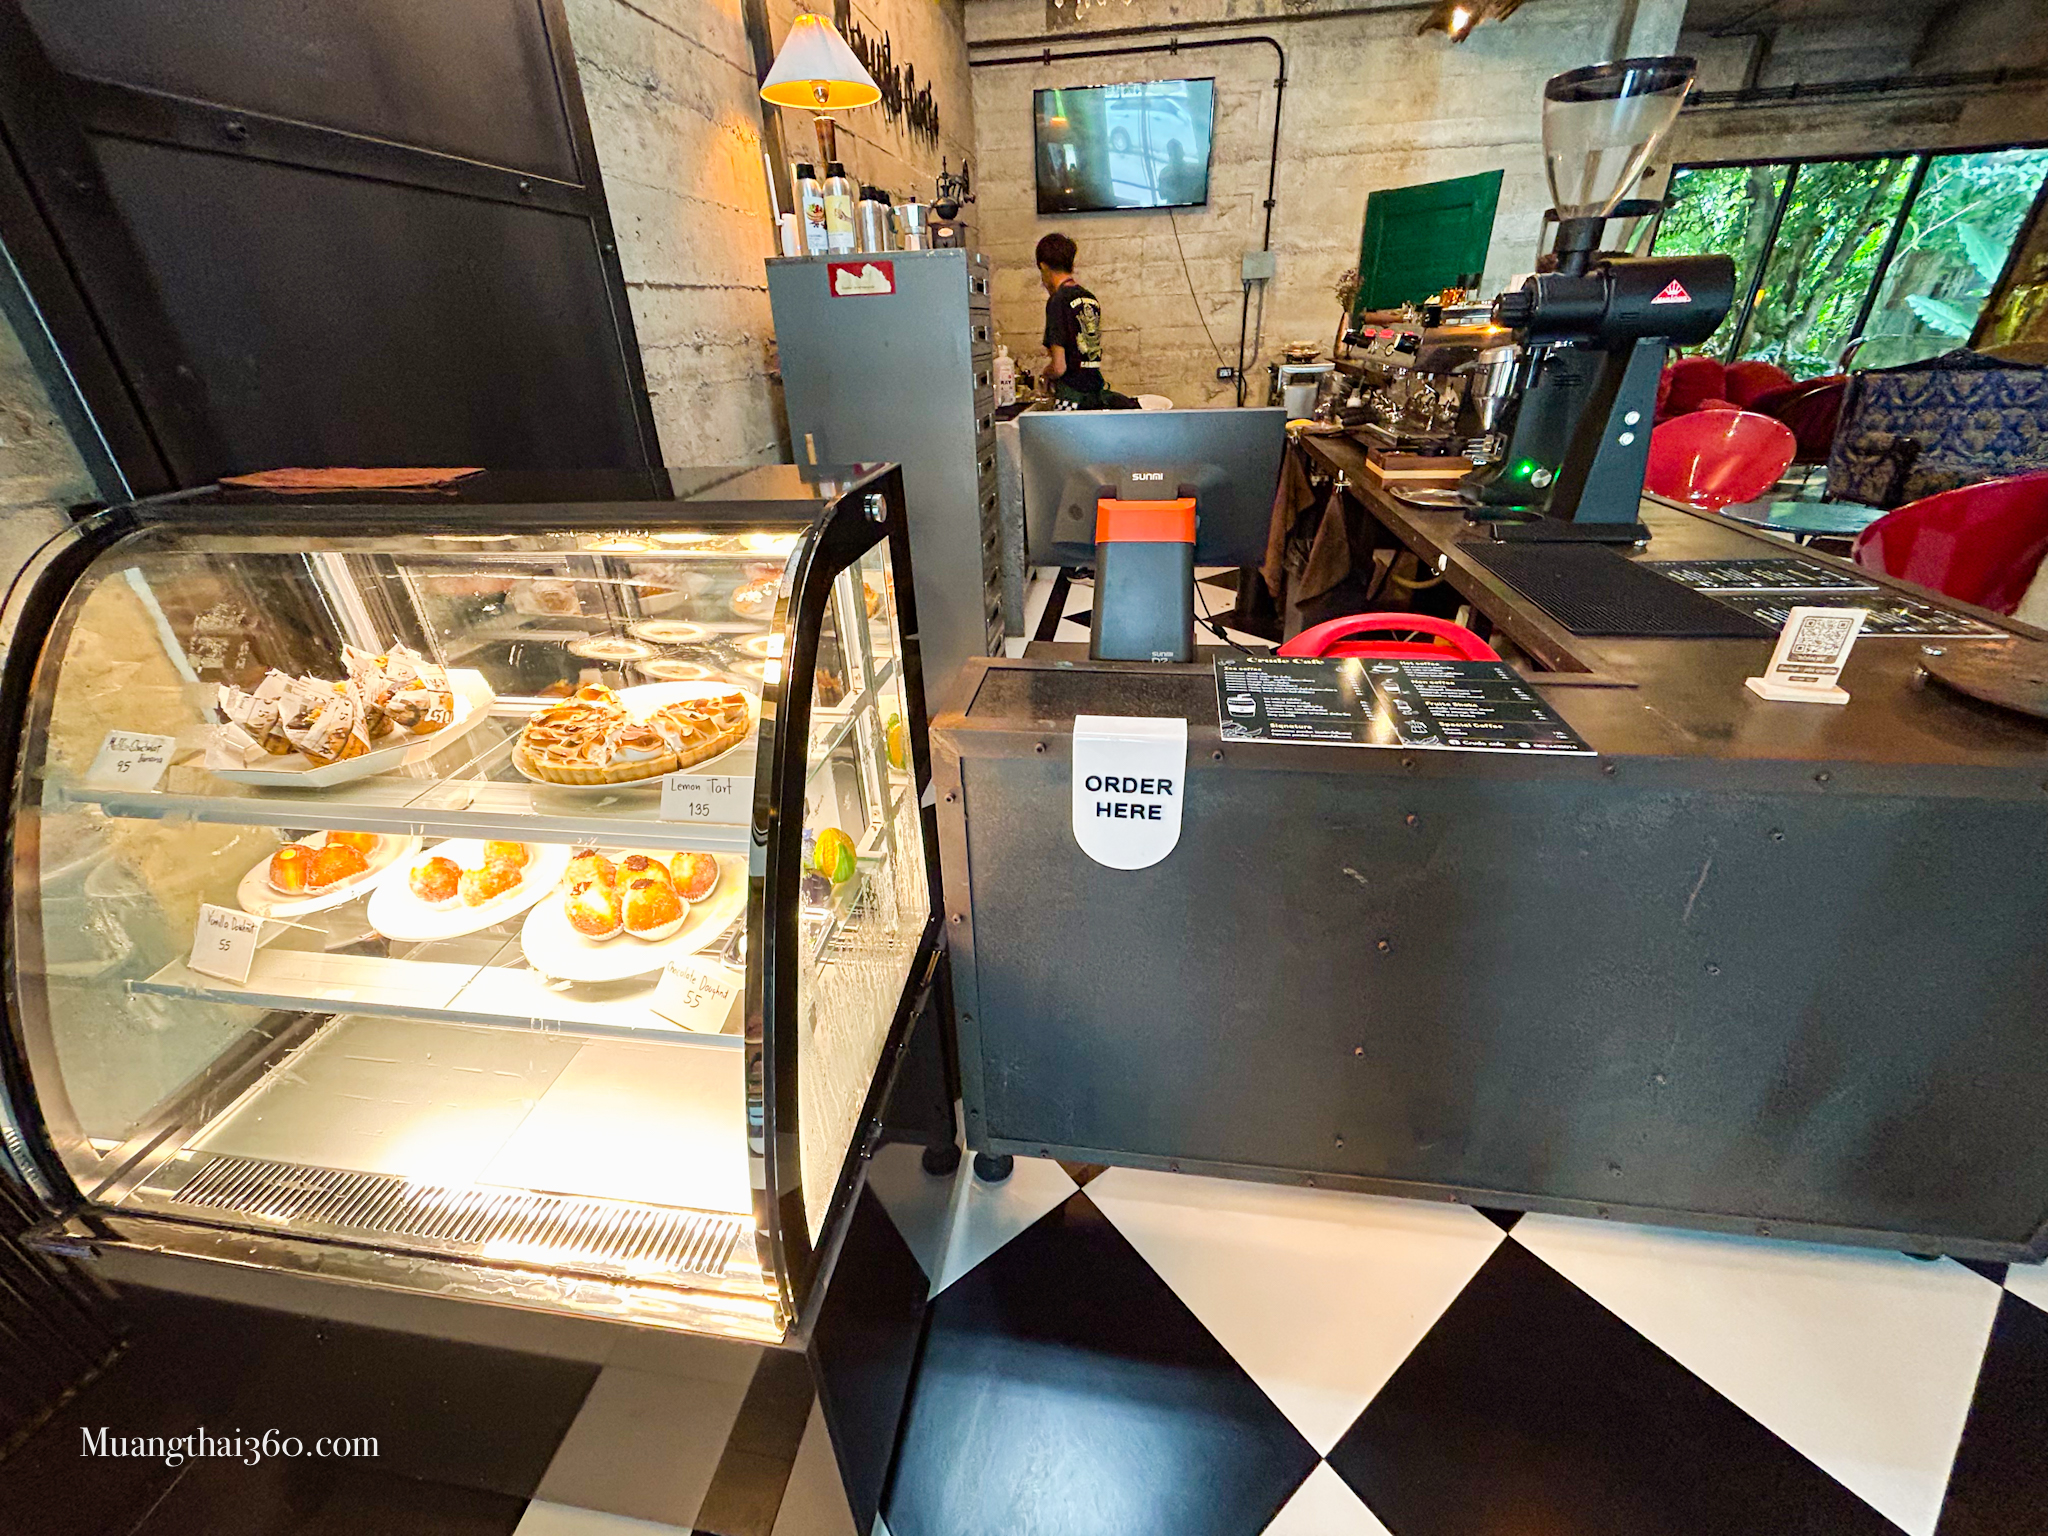 รูปภาพของ CRUDE CAFE เพราะความไม่สมบูรณ์แบบคือเสน่ห์ ร้านคาเฟ่ใหม่ล่าสุดในตรัง